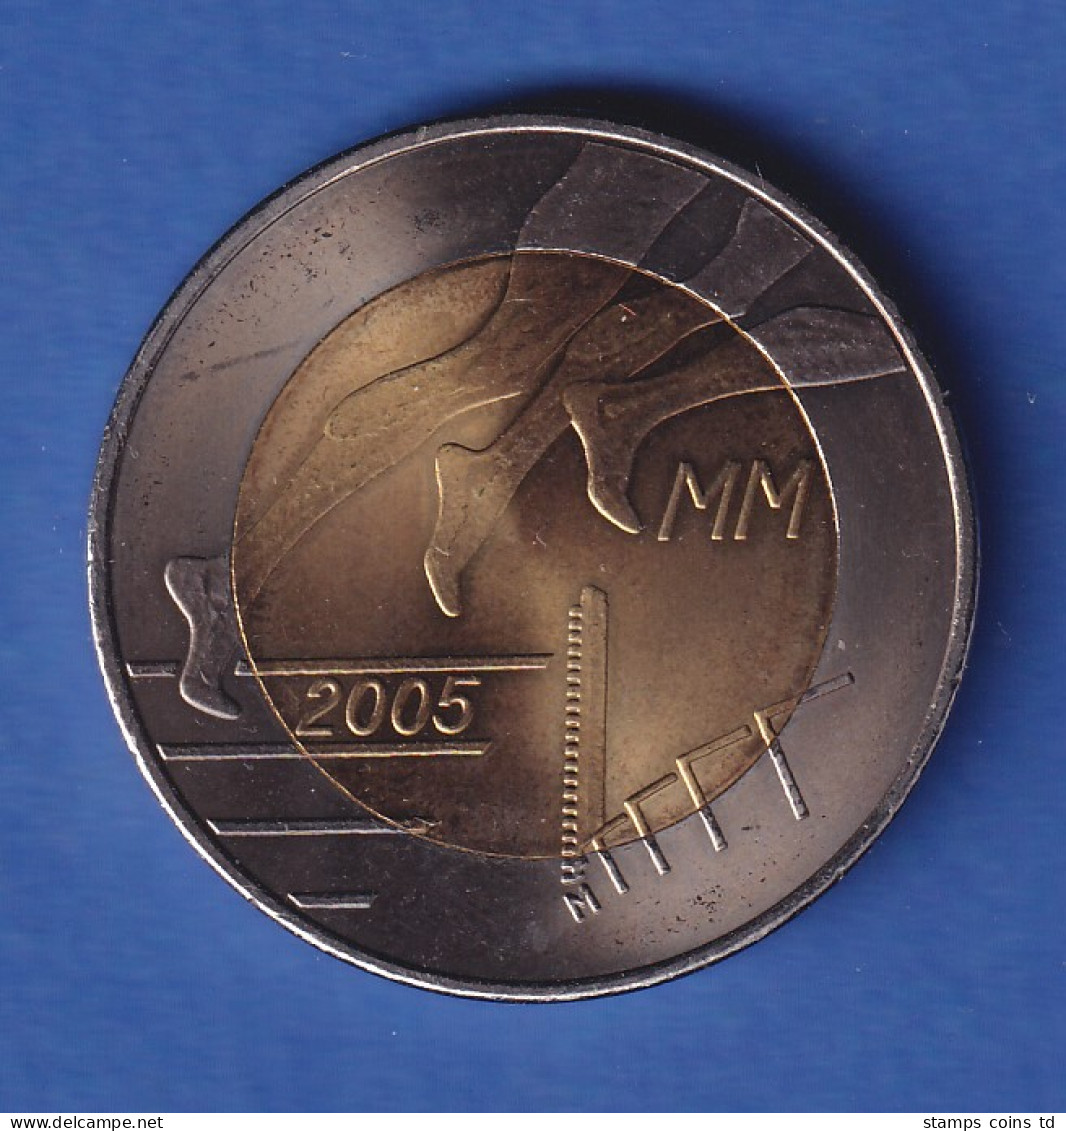 Finnland 2005 Leichtathletik-WM  5-Euro-Sondermünze  - Finlandia